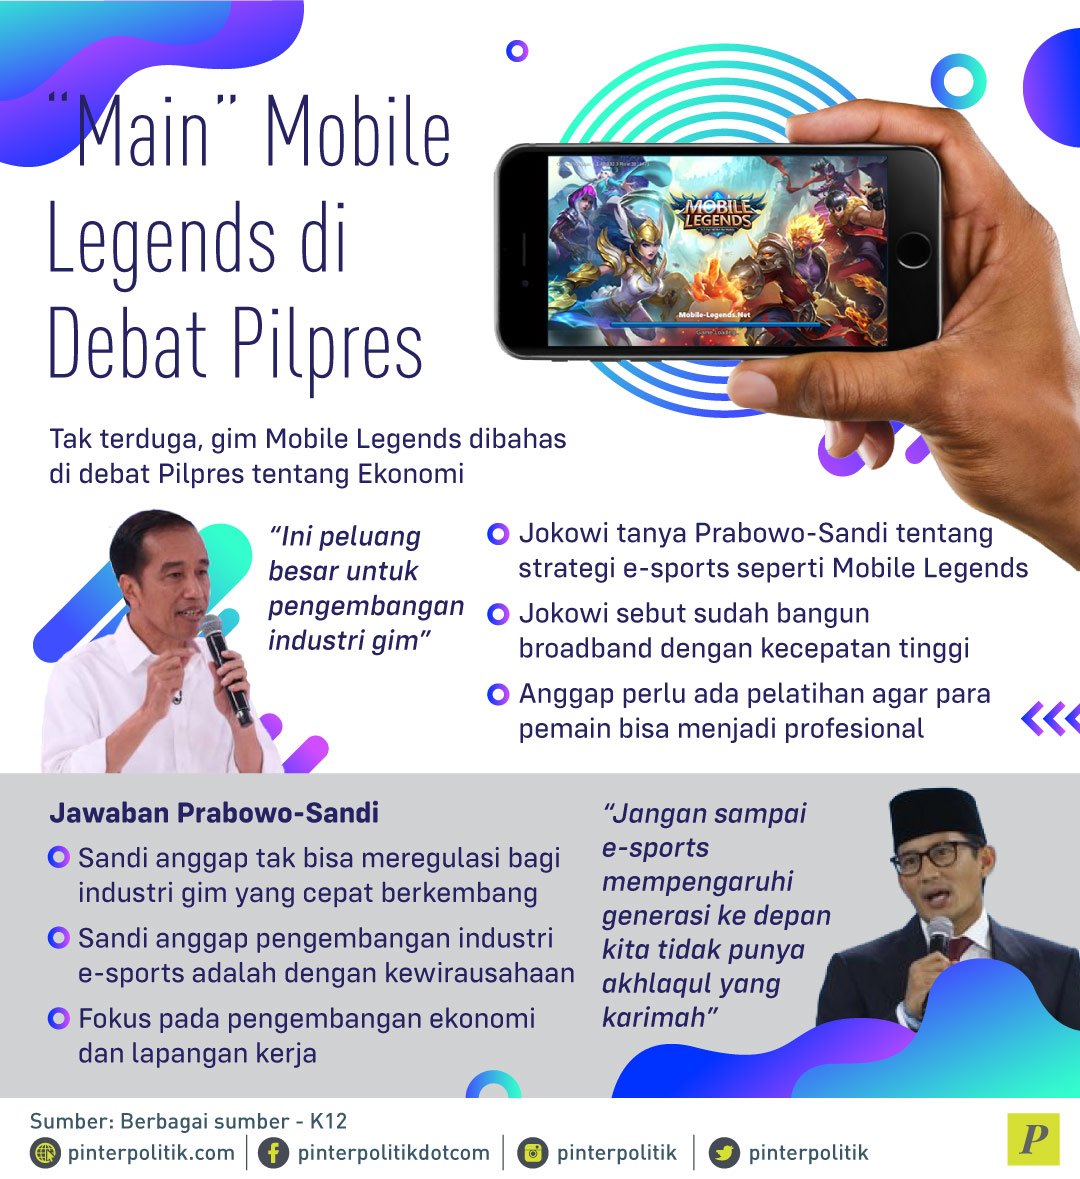 Main Mobile Legends Di Debat Pilpres Pinterpolitikcom